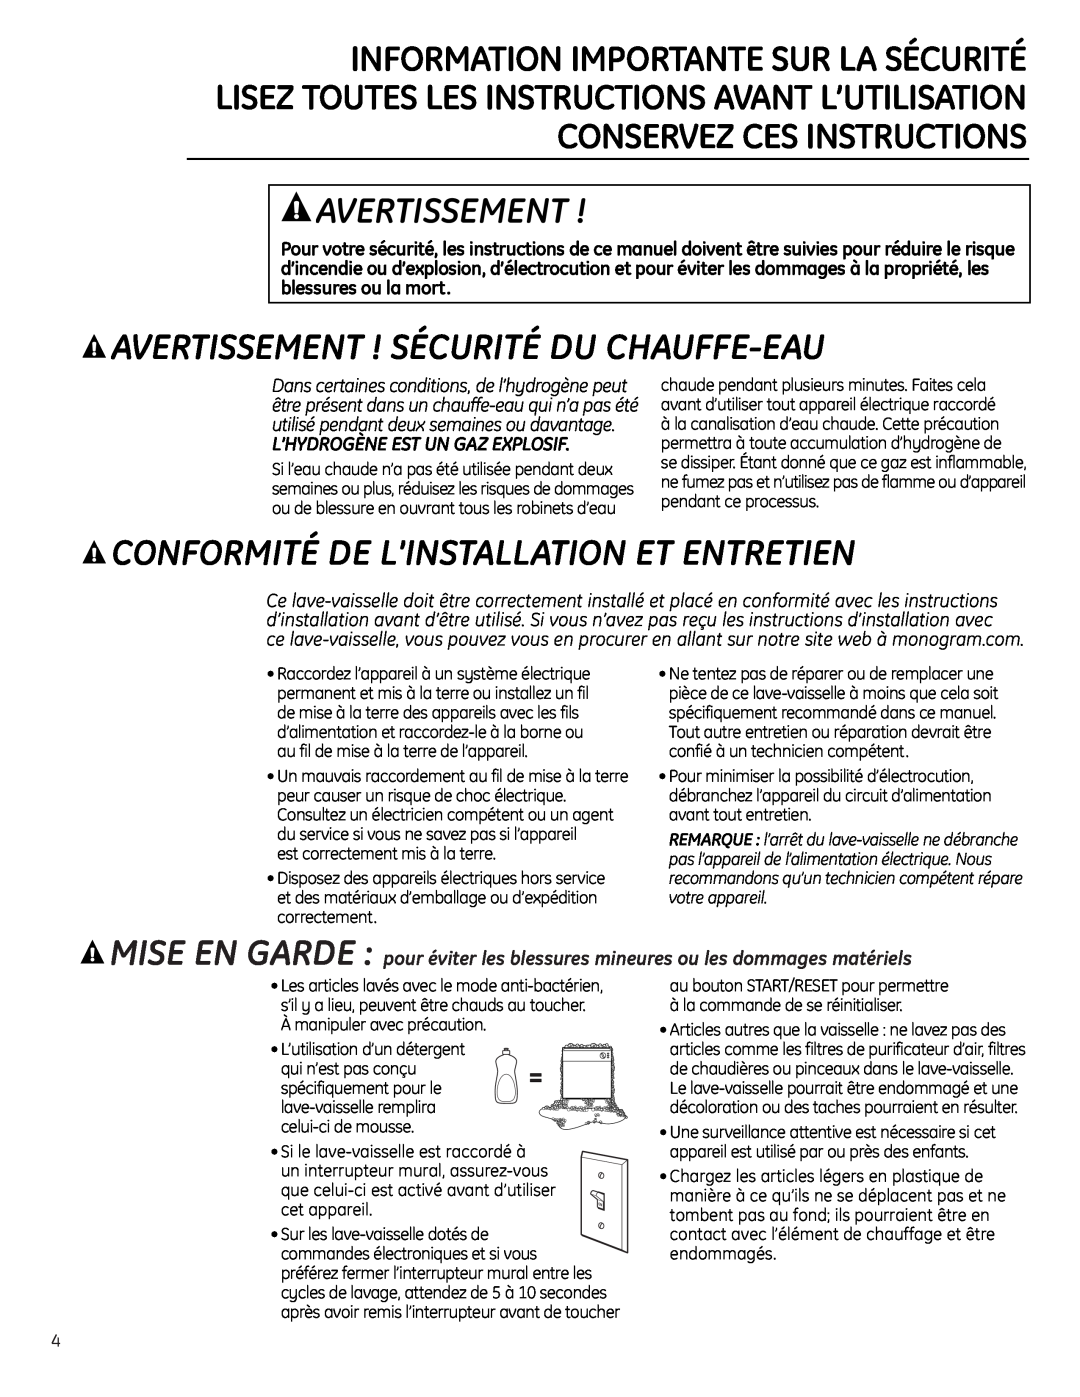 GE Monogram ZBD6890, ZBD6880 Avertissement ! Sécurité Du Chauffe-Eau, Conformité De L’Installation Et Entretien 